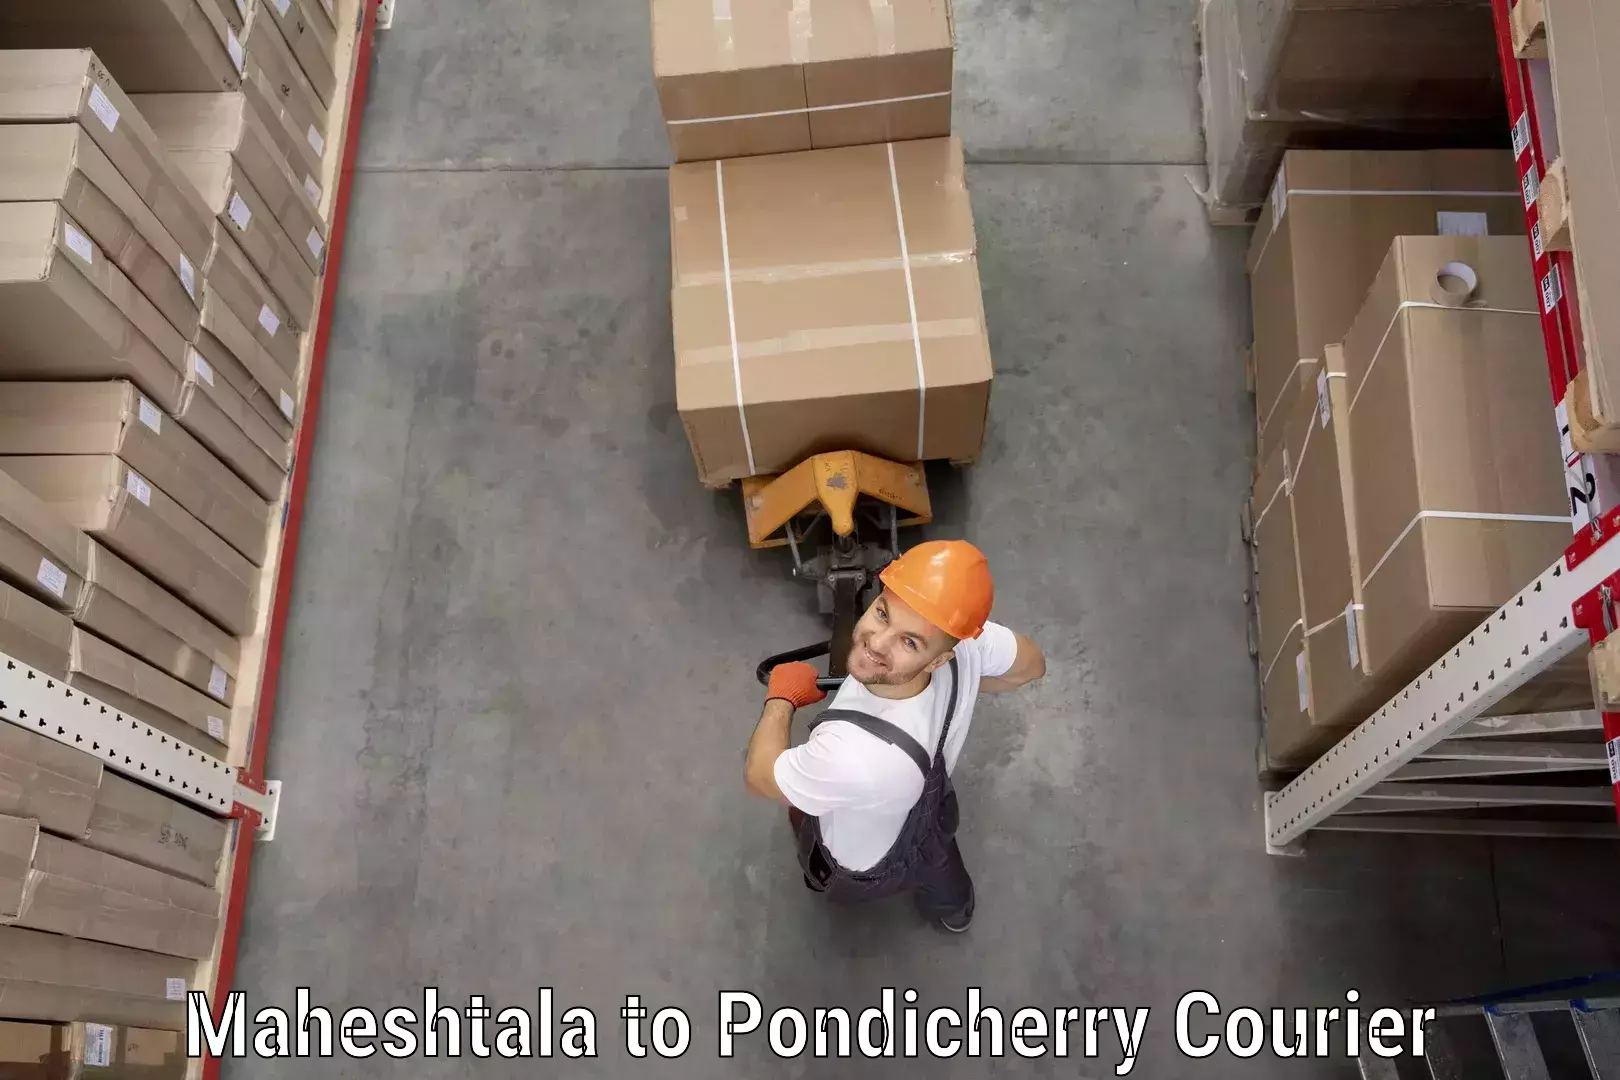 Courier service partnerships Maheshtala to NIT Puducherry